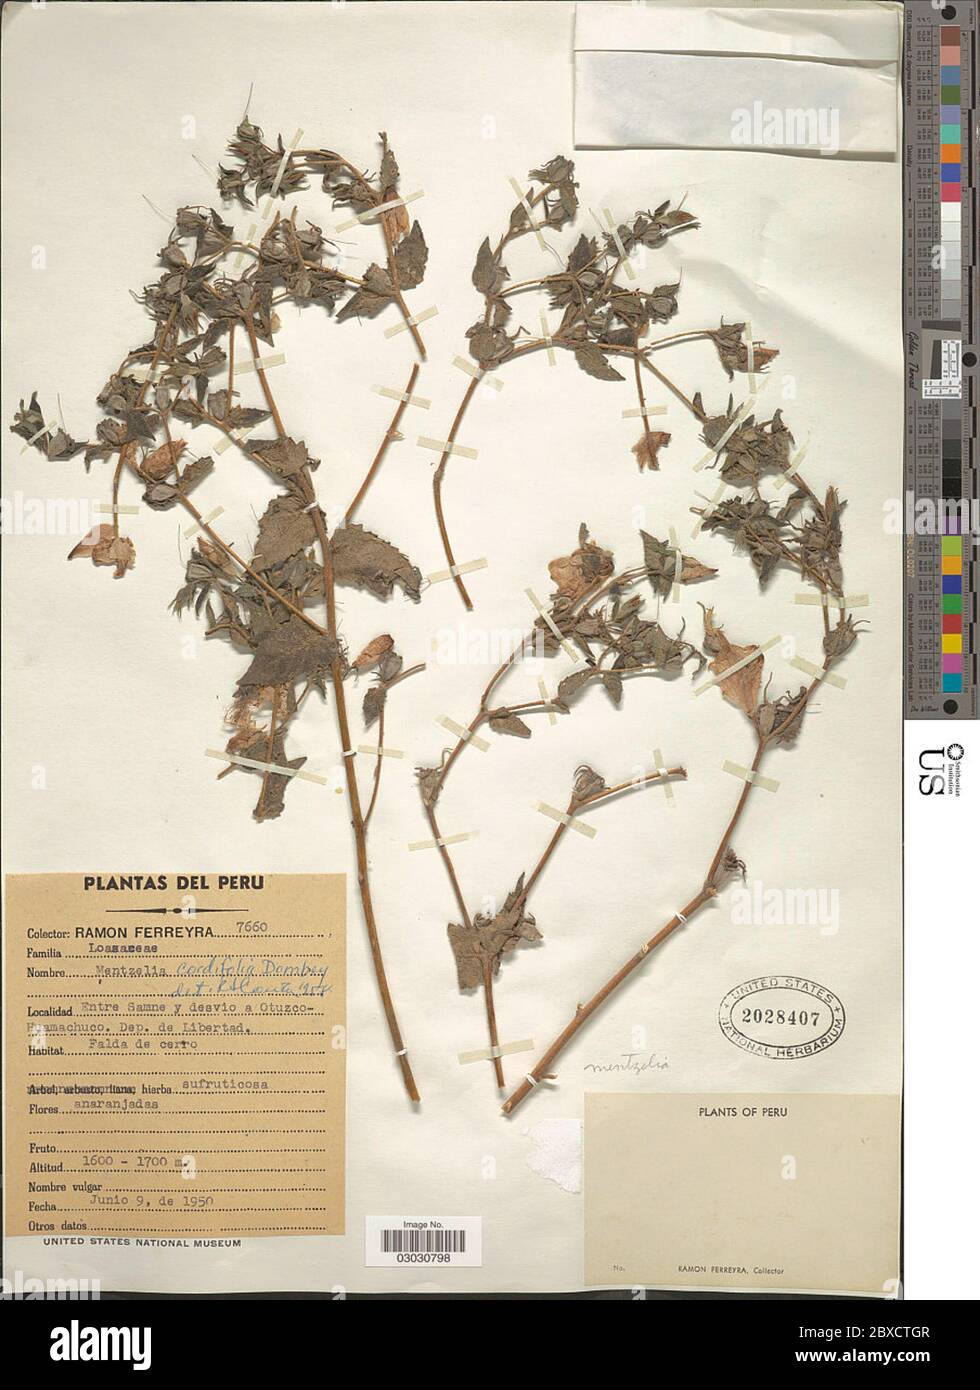 Mentzelia cordifolia Dombey ex Urb Gilg Mentzelia cordifolia Dombey ex Urb Gilg. Stock Photo